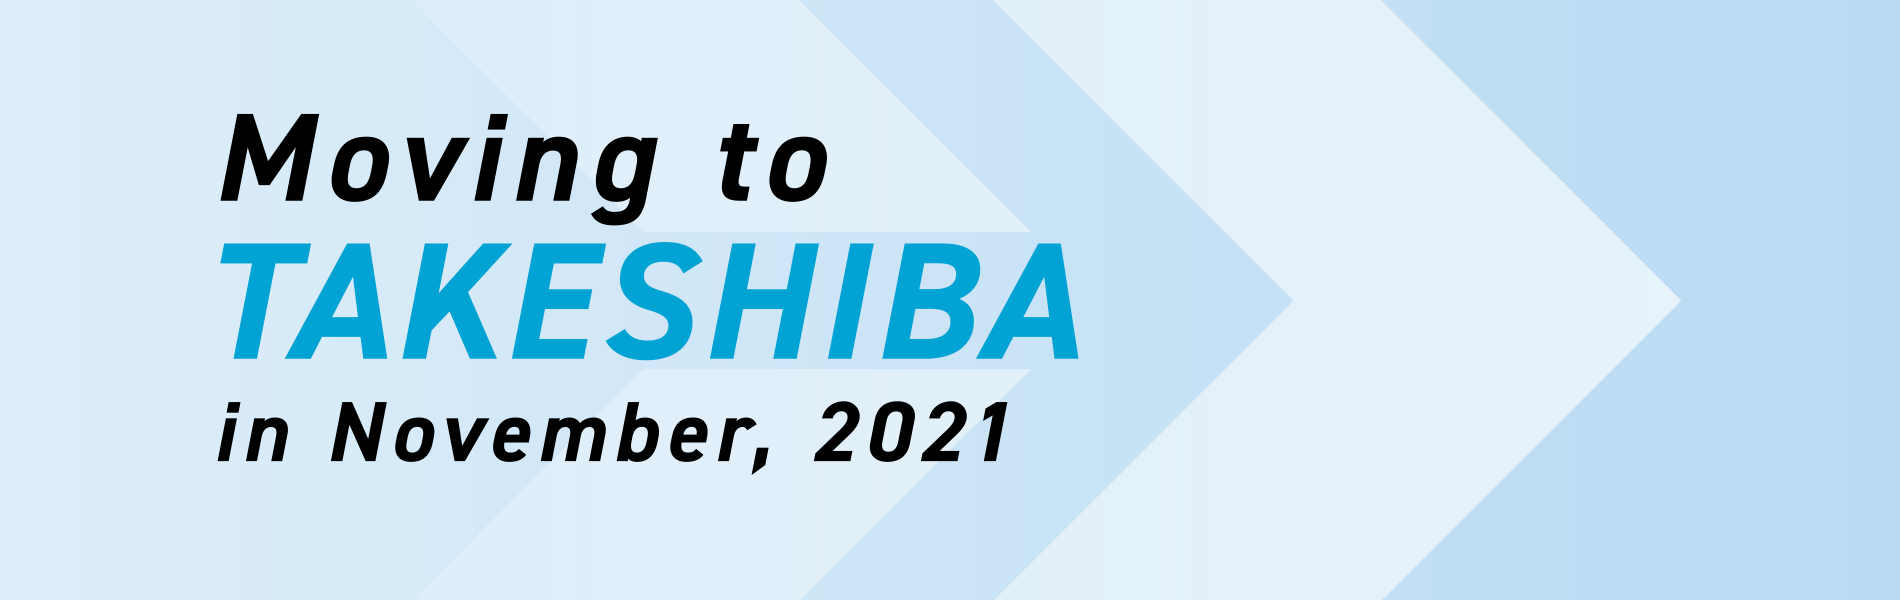 Moving to TAKESHIBA in November, 2021